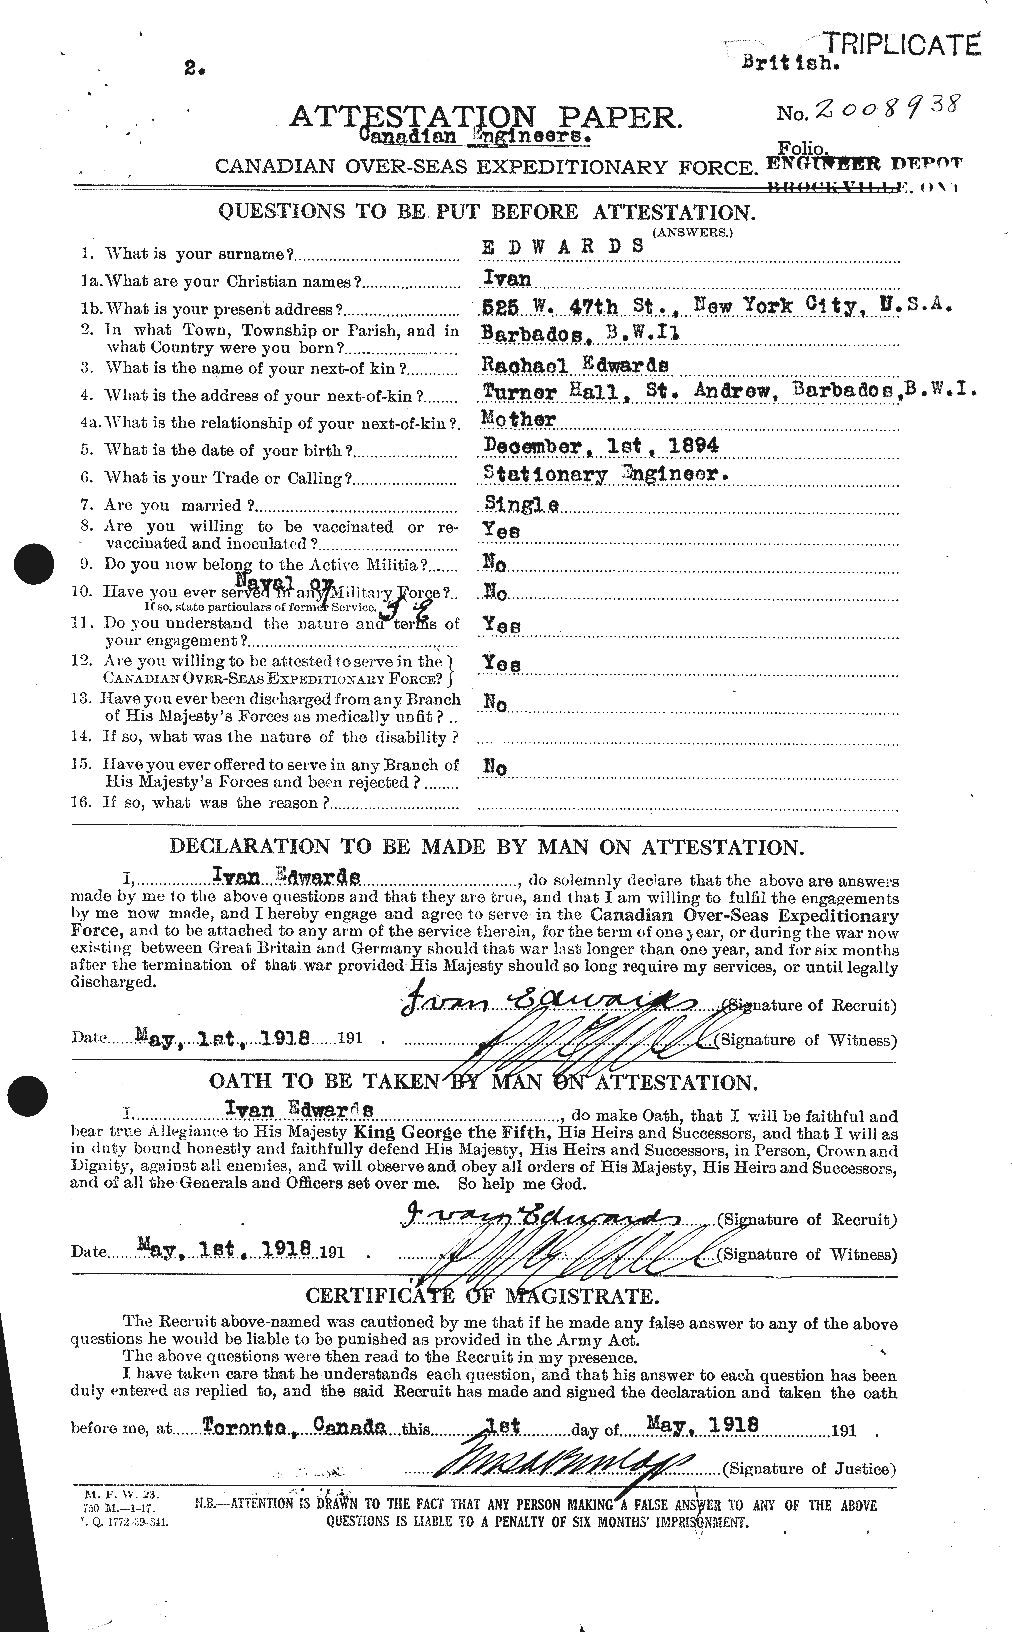 Dossiers du Personnel de la Première Guerre mondiale - CEC 309795a